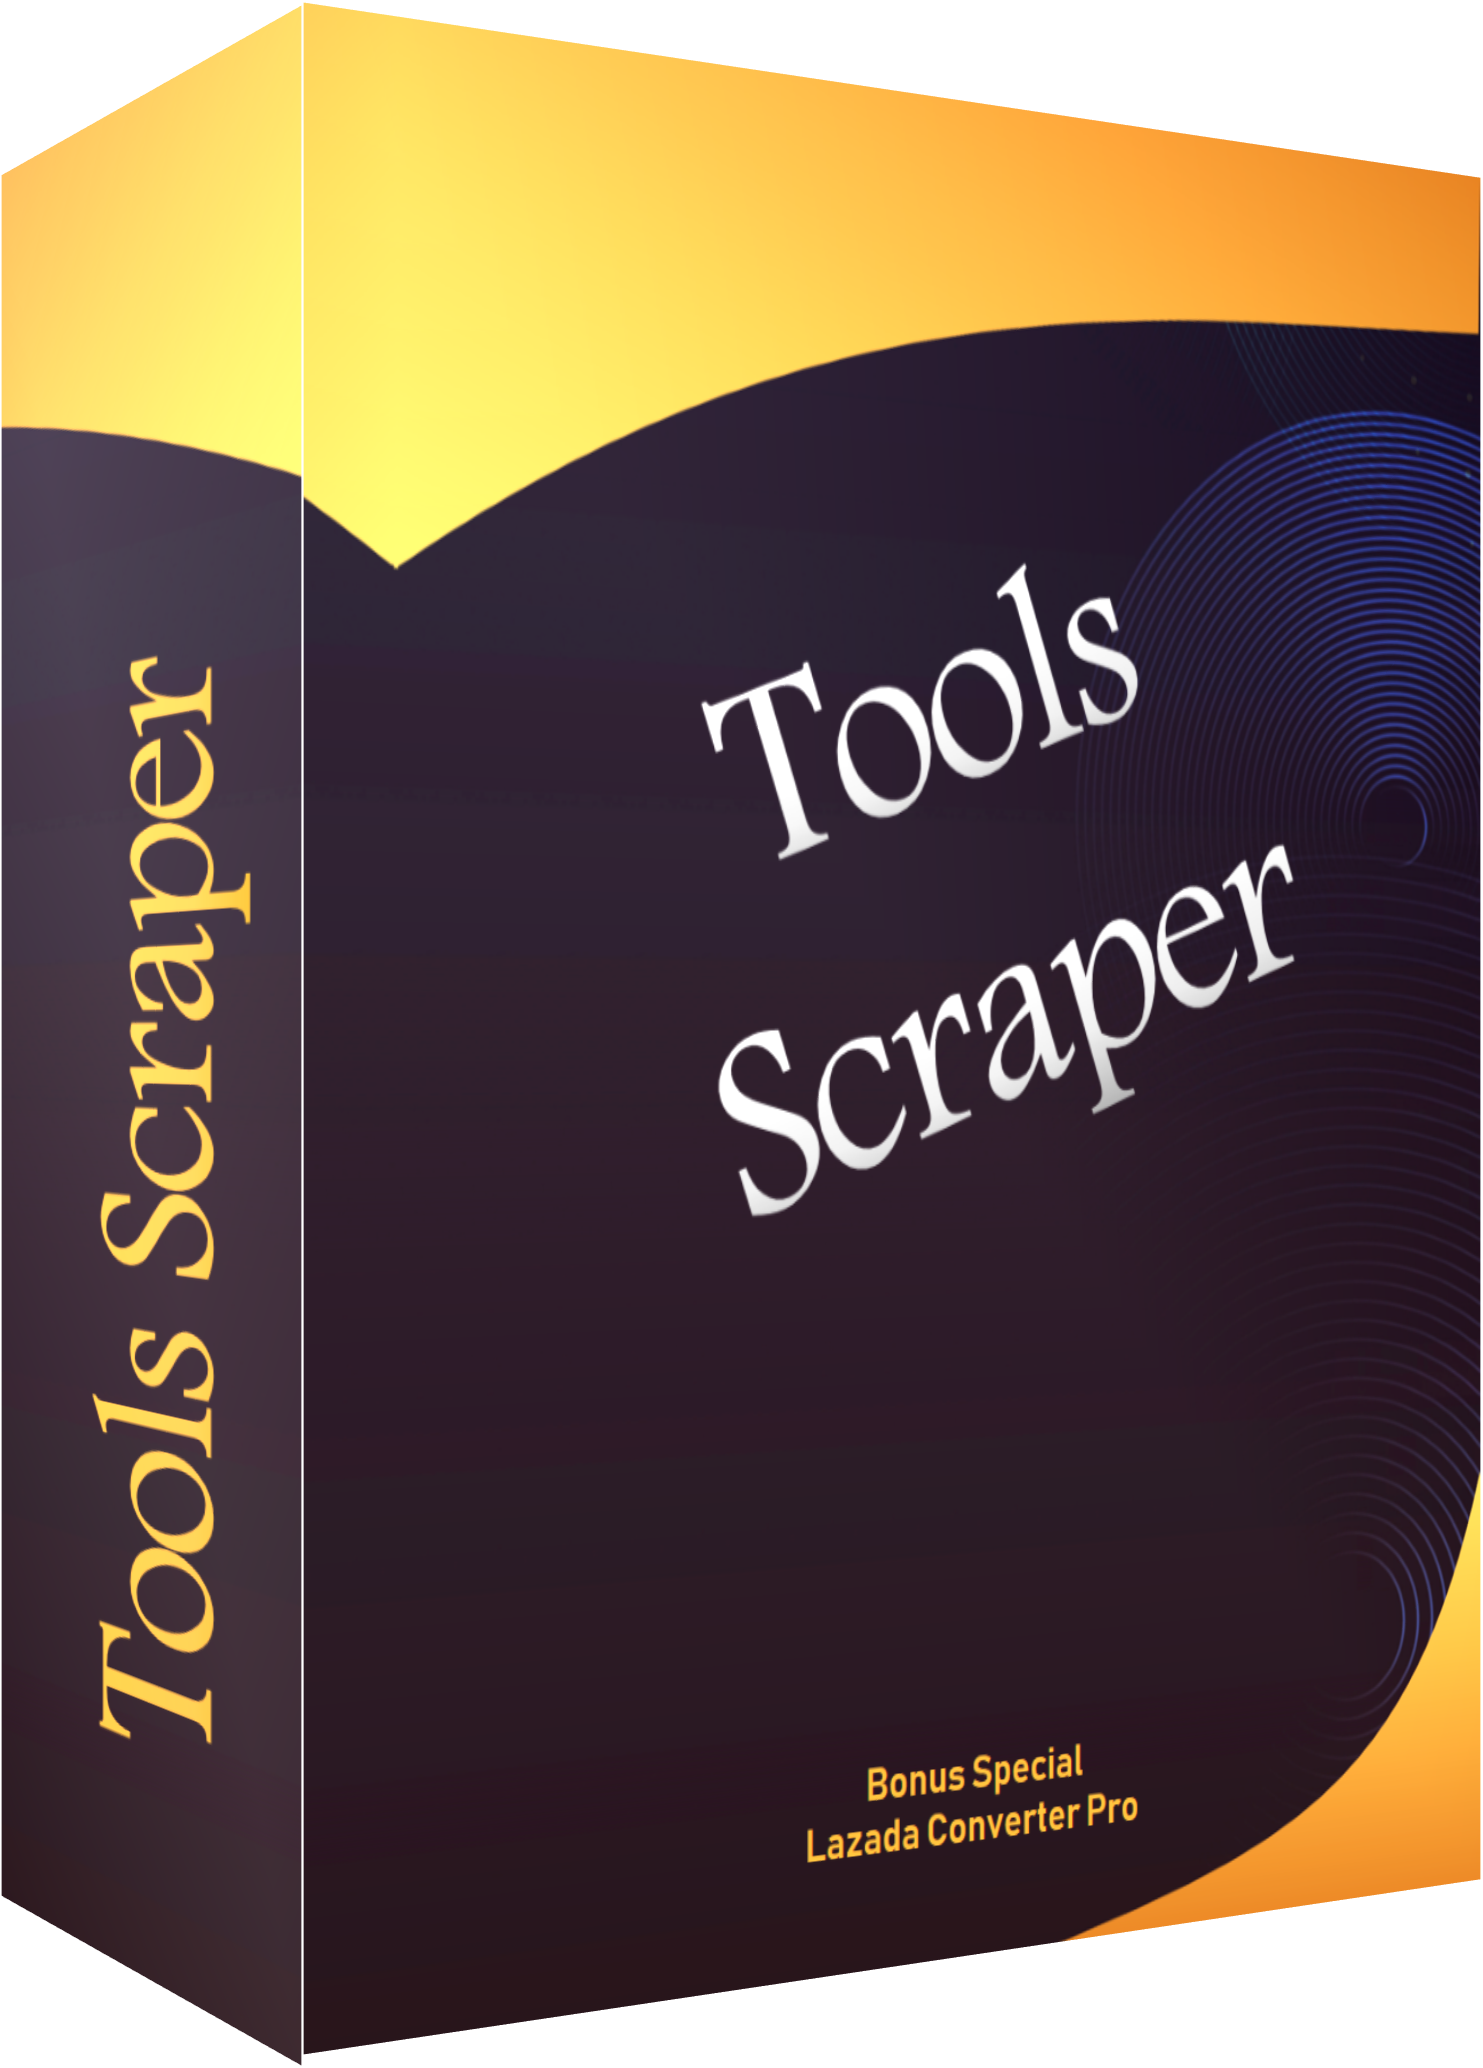 ecover-bonus-tools-scraper.png